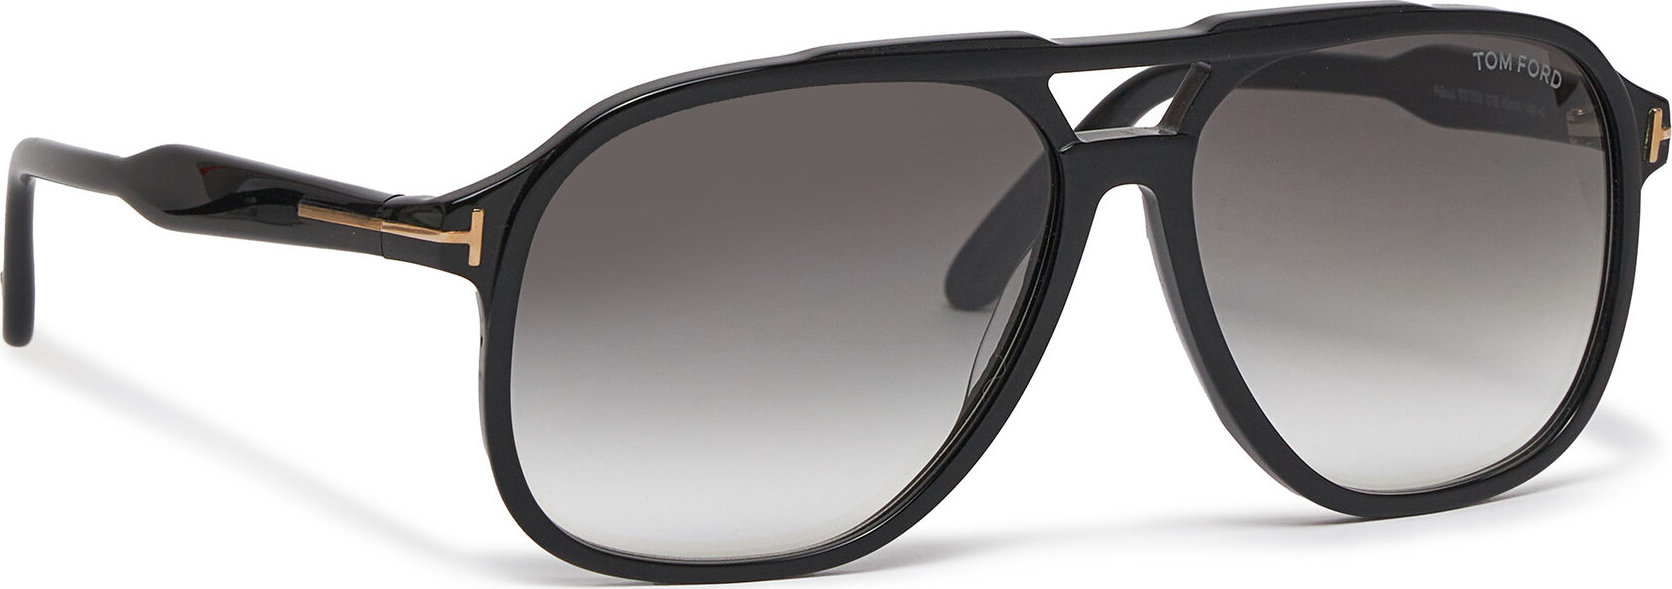 Sluneční brýle Tom Ford FT0753 Shiny Black /Gradient Smoke 01B